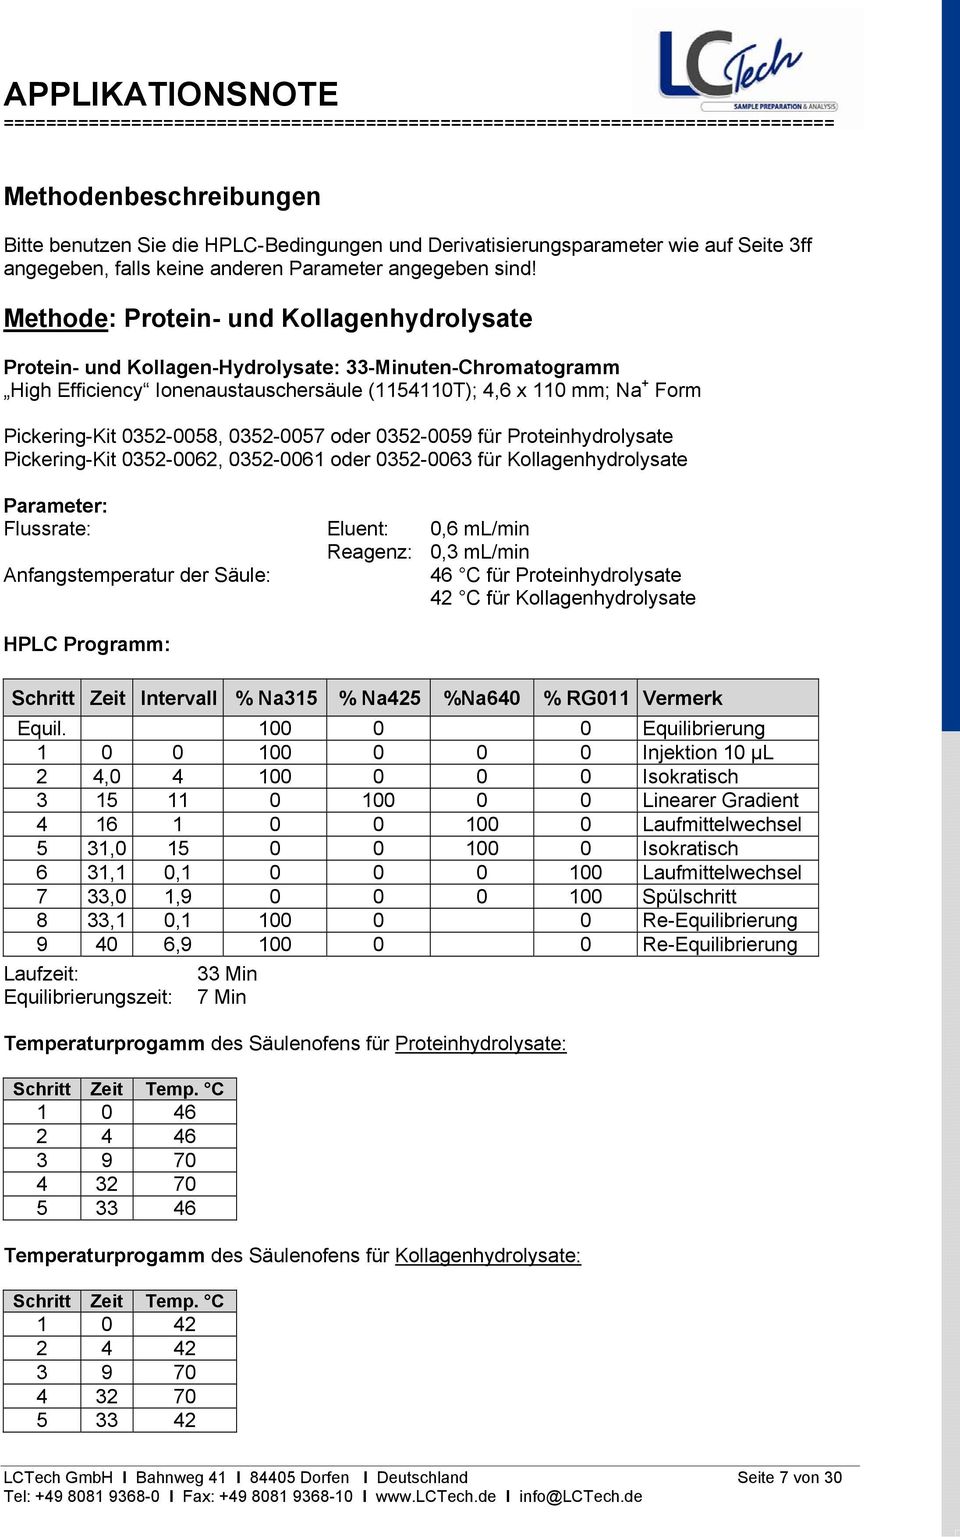 0352-0058, 0352-0057 oder 0352-0059 für Proteinhydrolysate Pickering-Kit 0352-0062, 0352-0061 oder 0352-0063 für Kollagenhydrolysate Parameter: Flussrate: Eluent: 0,6 ml/min Reagenz: 0,3 ml/min